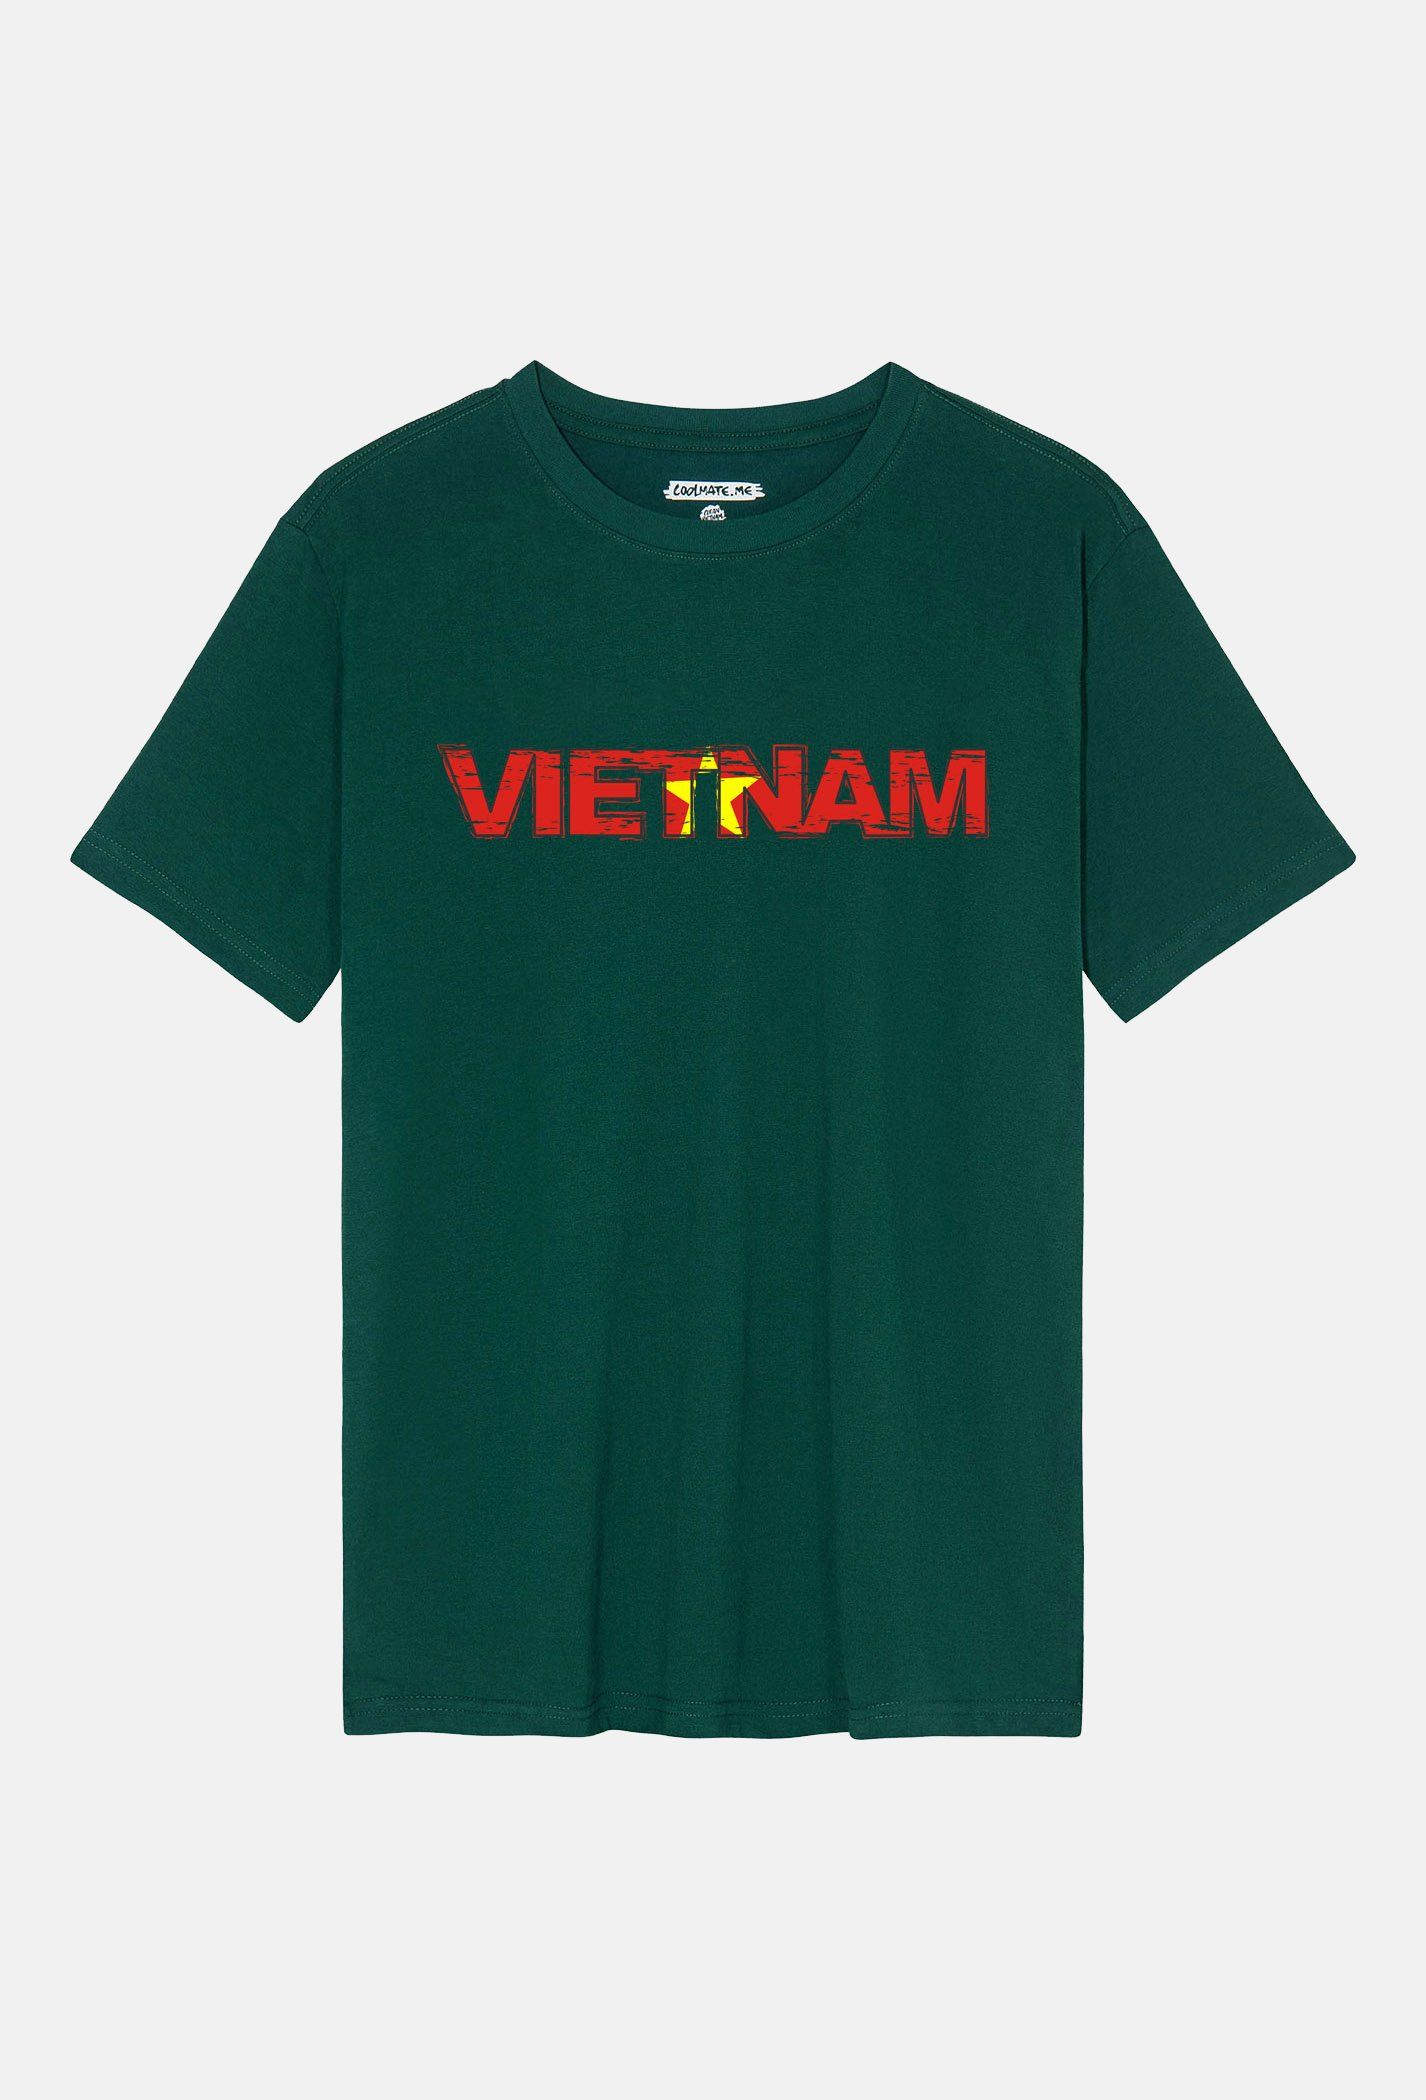 Áo thun Clean Vietnam in Proud Vietnam Xanh Forest